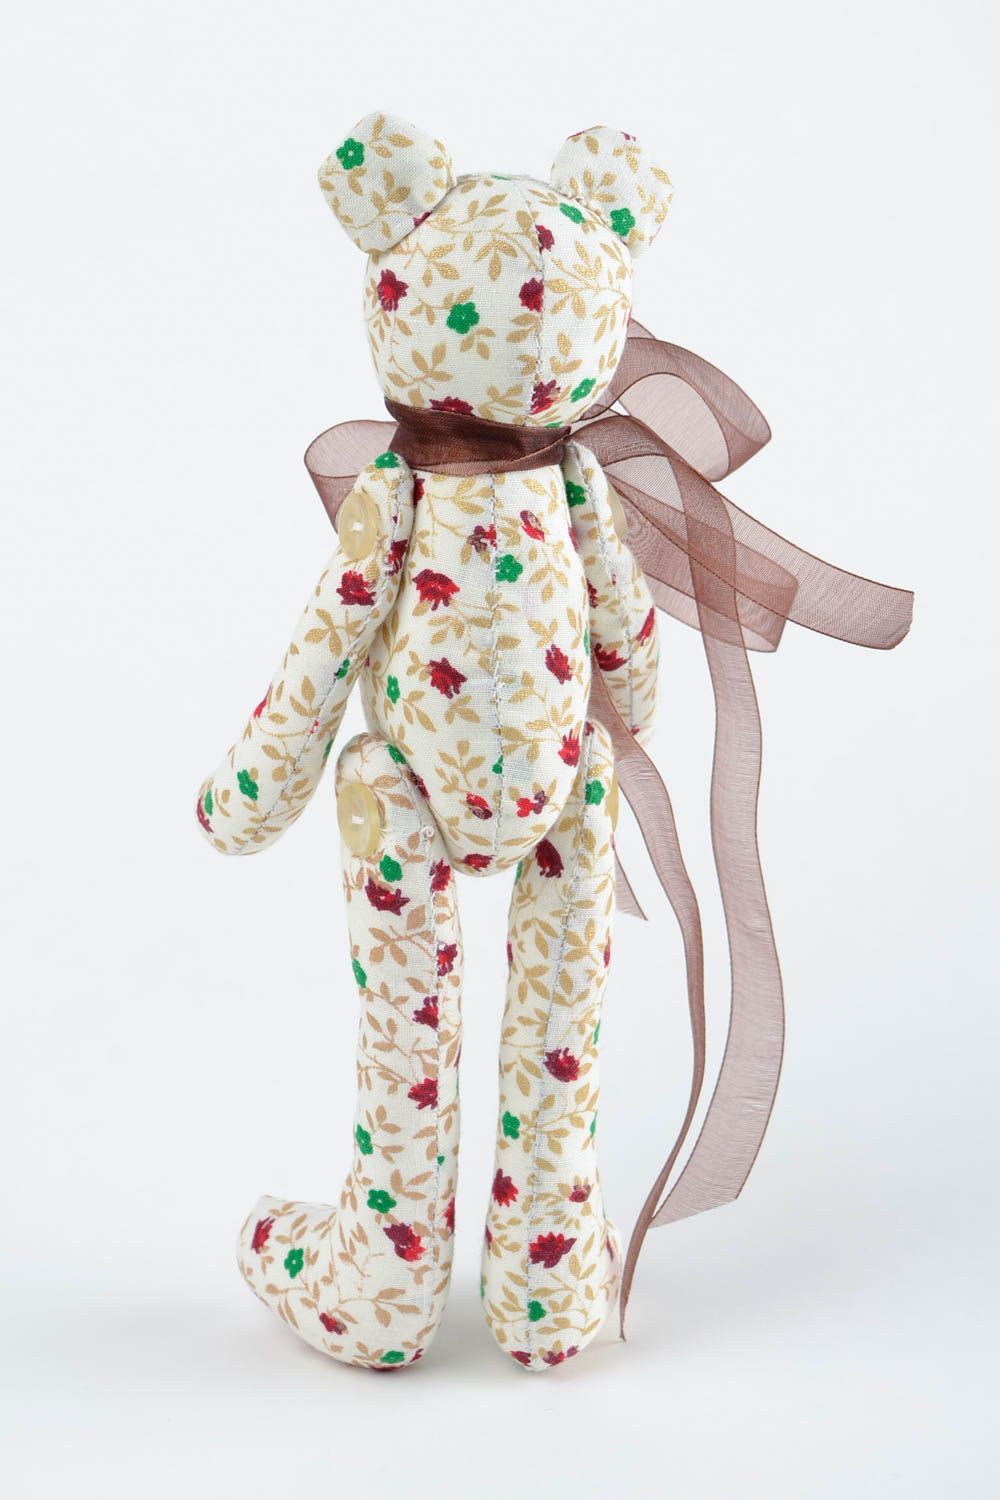 Игрушка мишка из хлопка игрушка ручной работы интересный подарок на новоселье фото 5